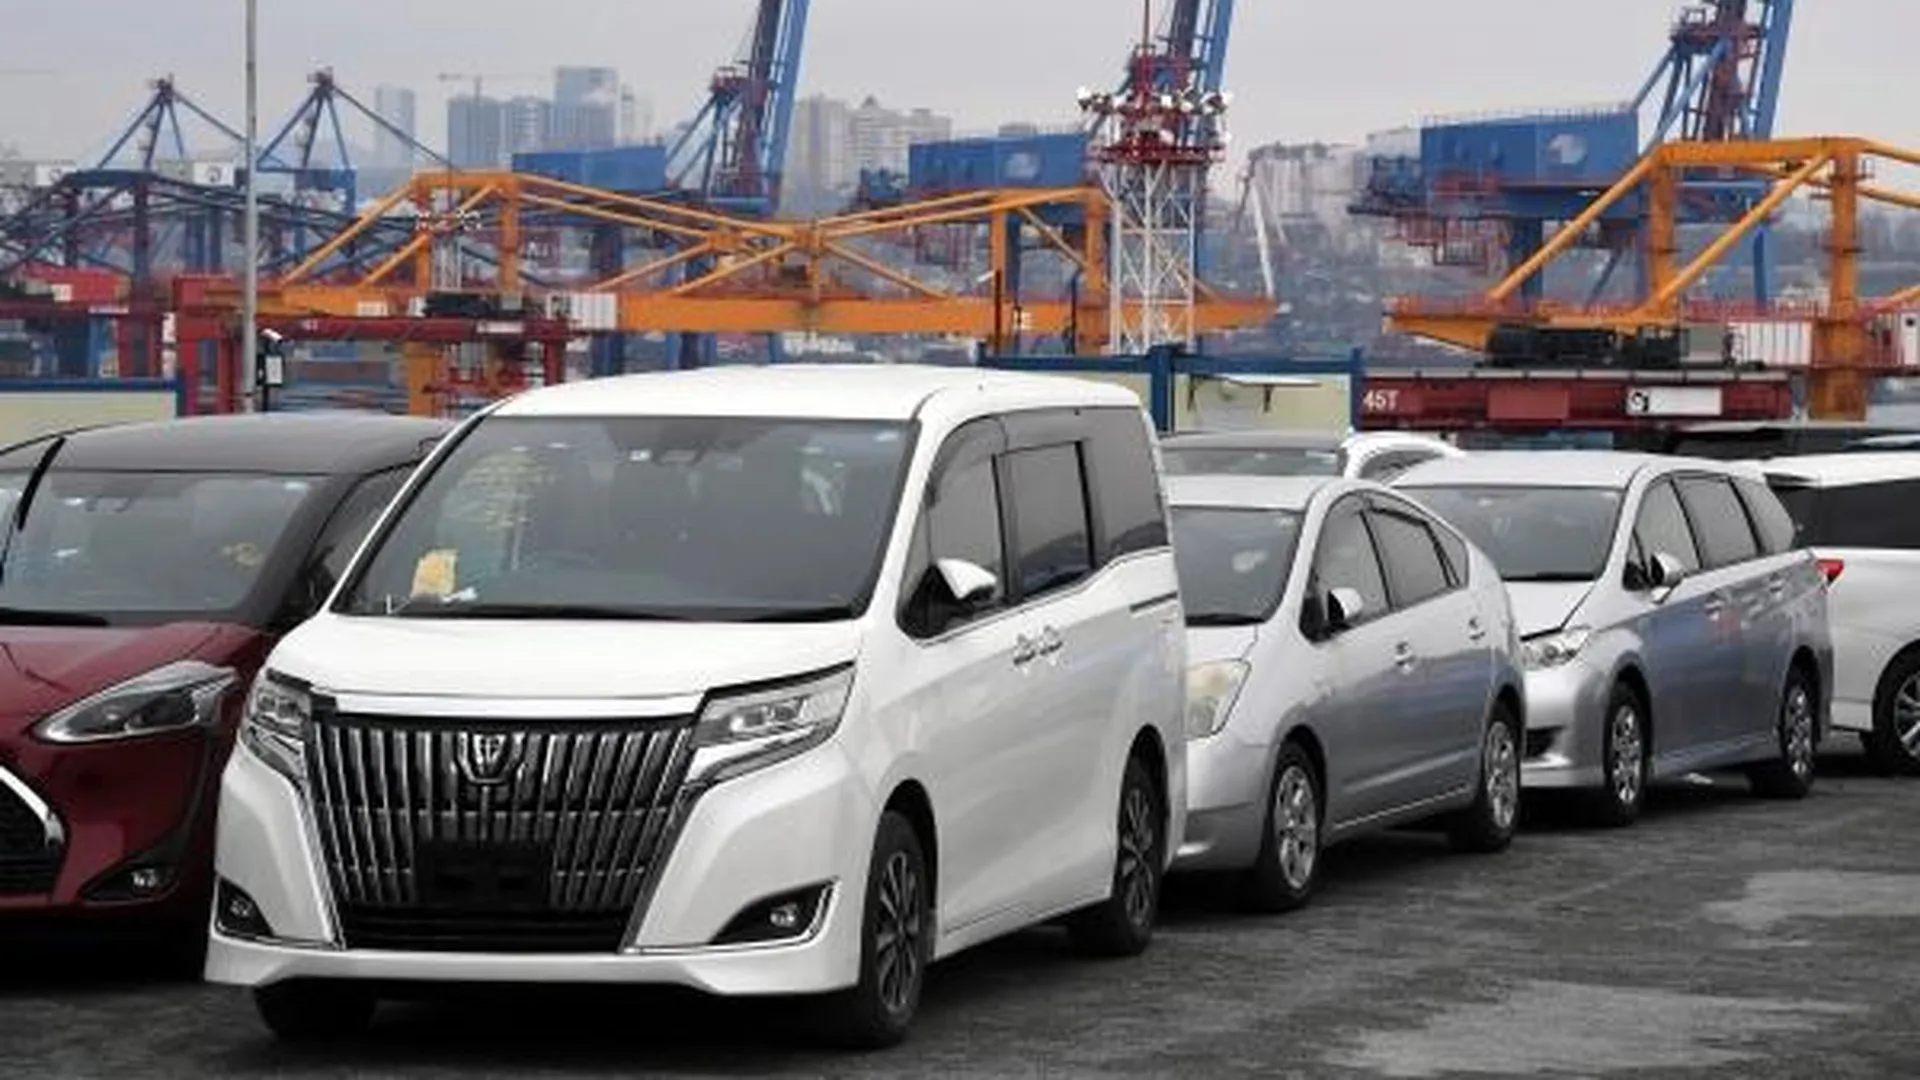 Автомобили на складе временного хранения Владивостокского морского торгового порта.